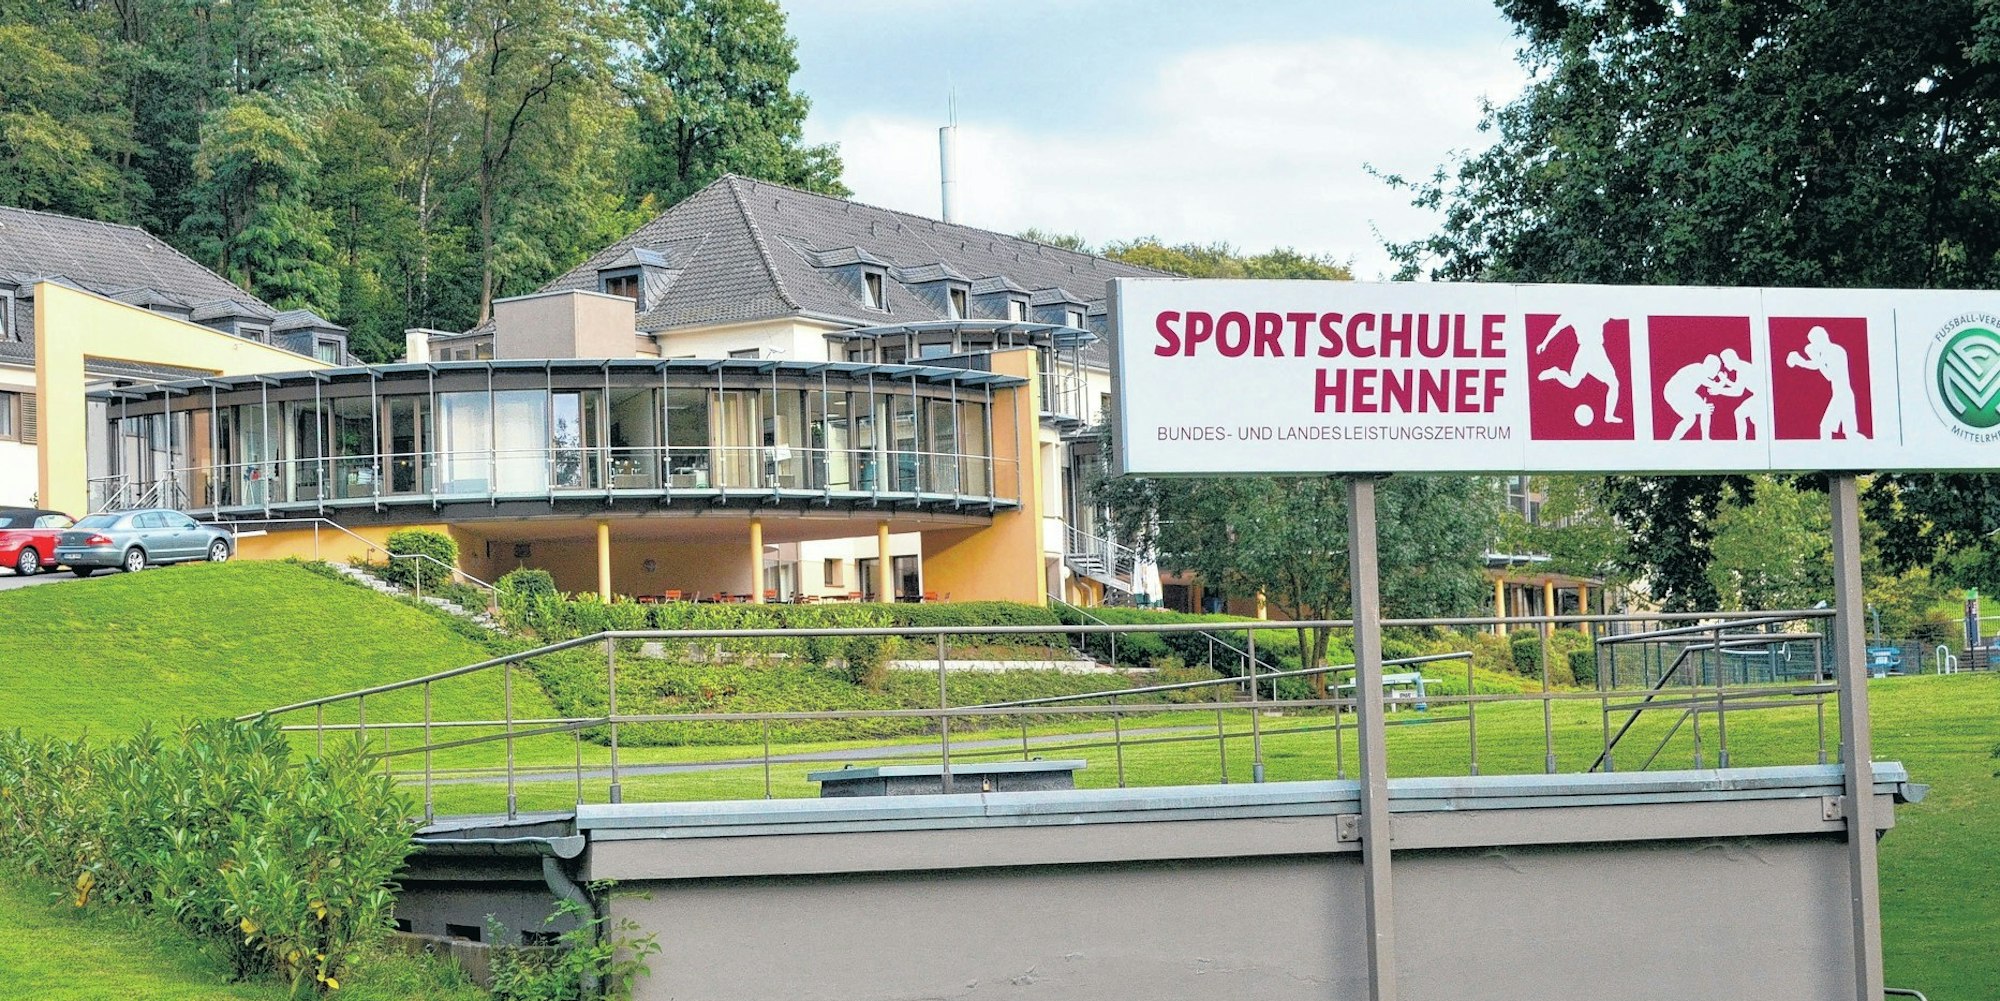 Der Trainer-Lehrgang des DFB wird ab 2021 nicht mehr in der Sportschule stattfinden, wo auch andere Verbände Leistungszentren unterhalten.